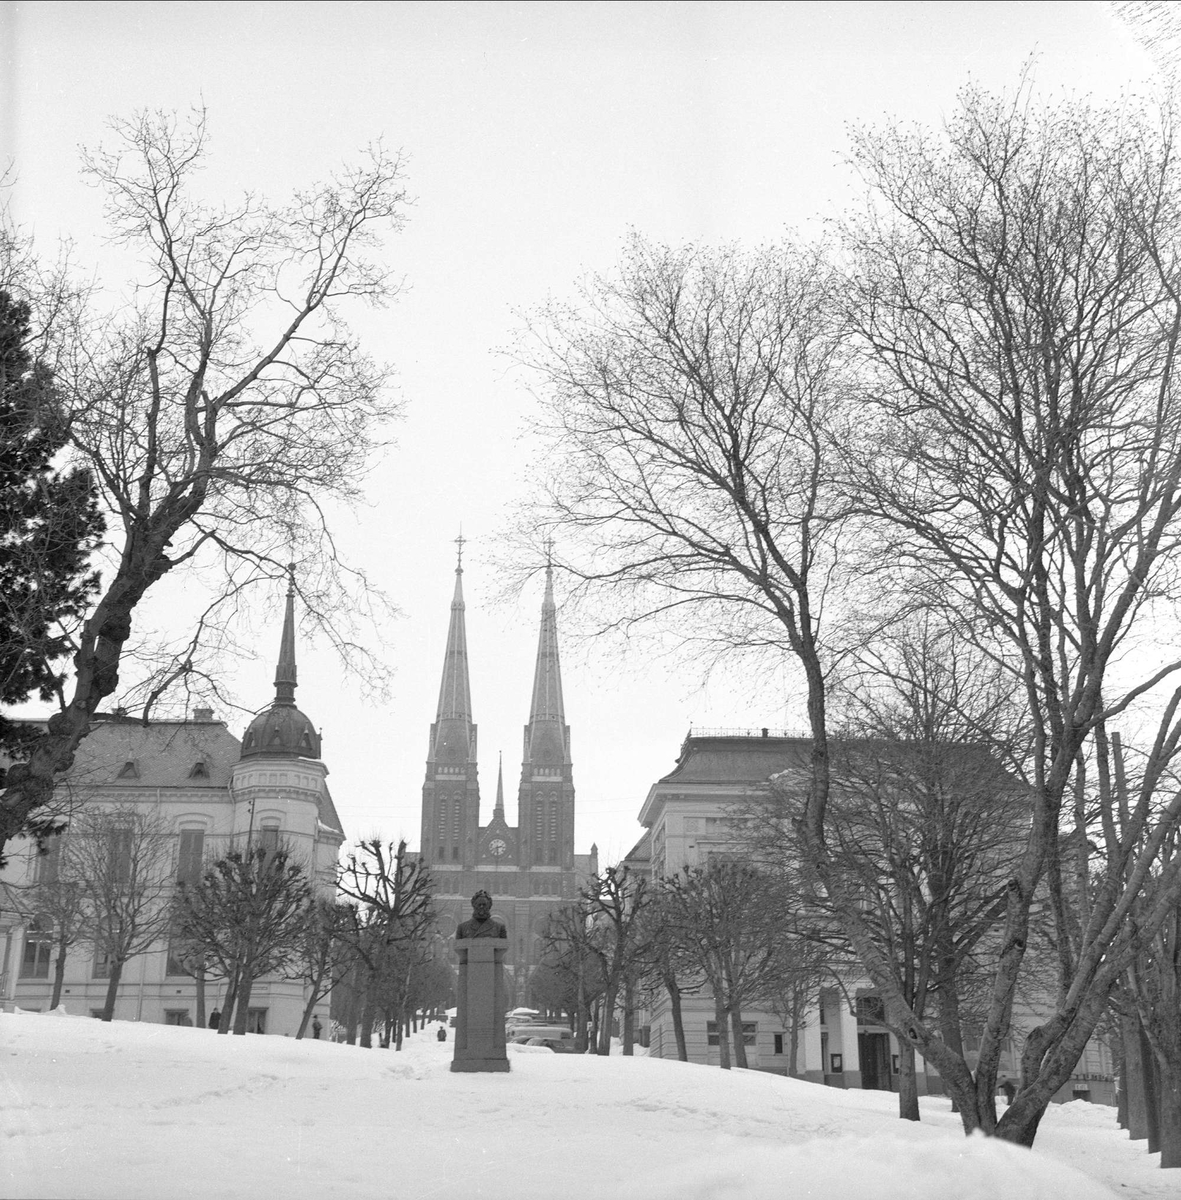 Skien, Telemark, mars 1958. Byjubileum. Bybilde med park og kirke.